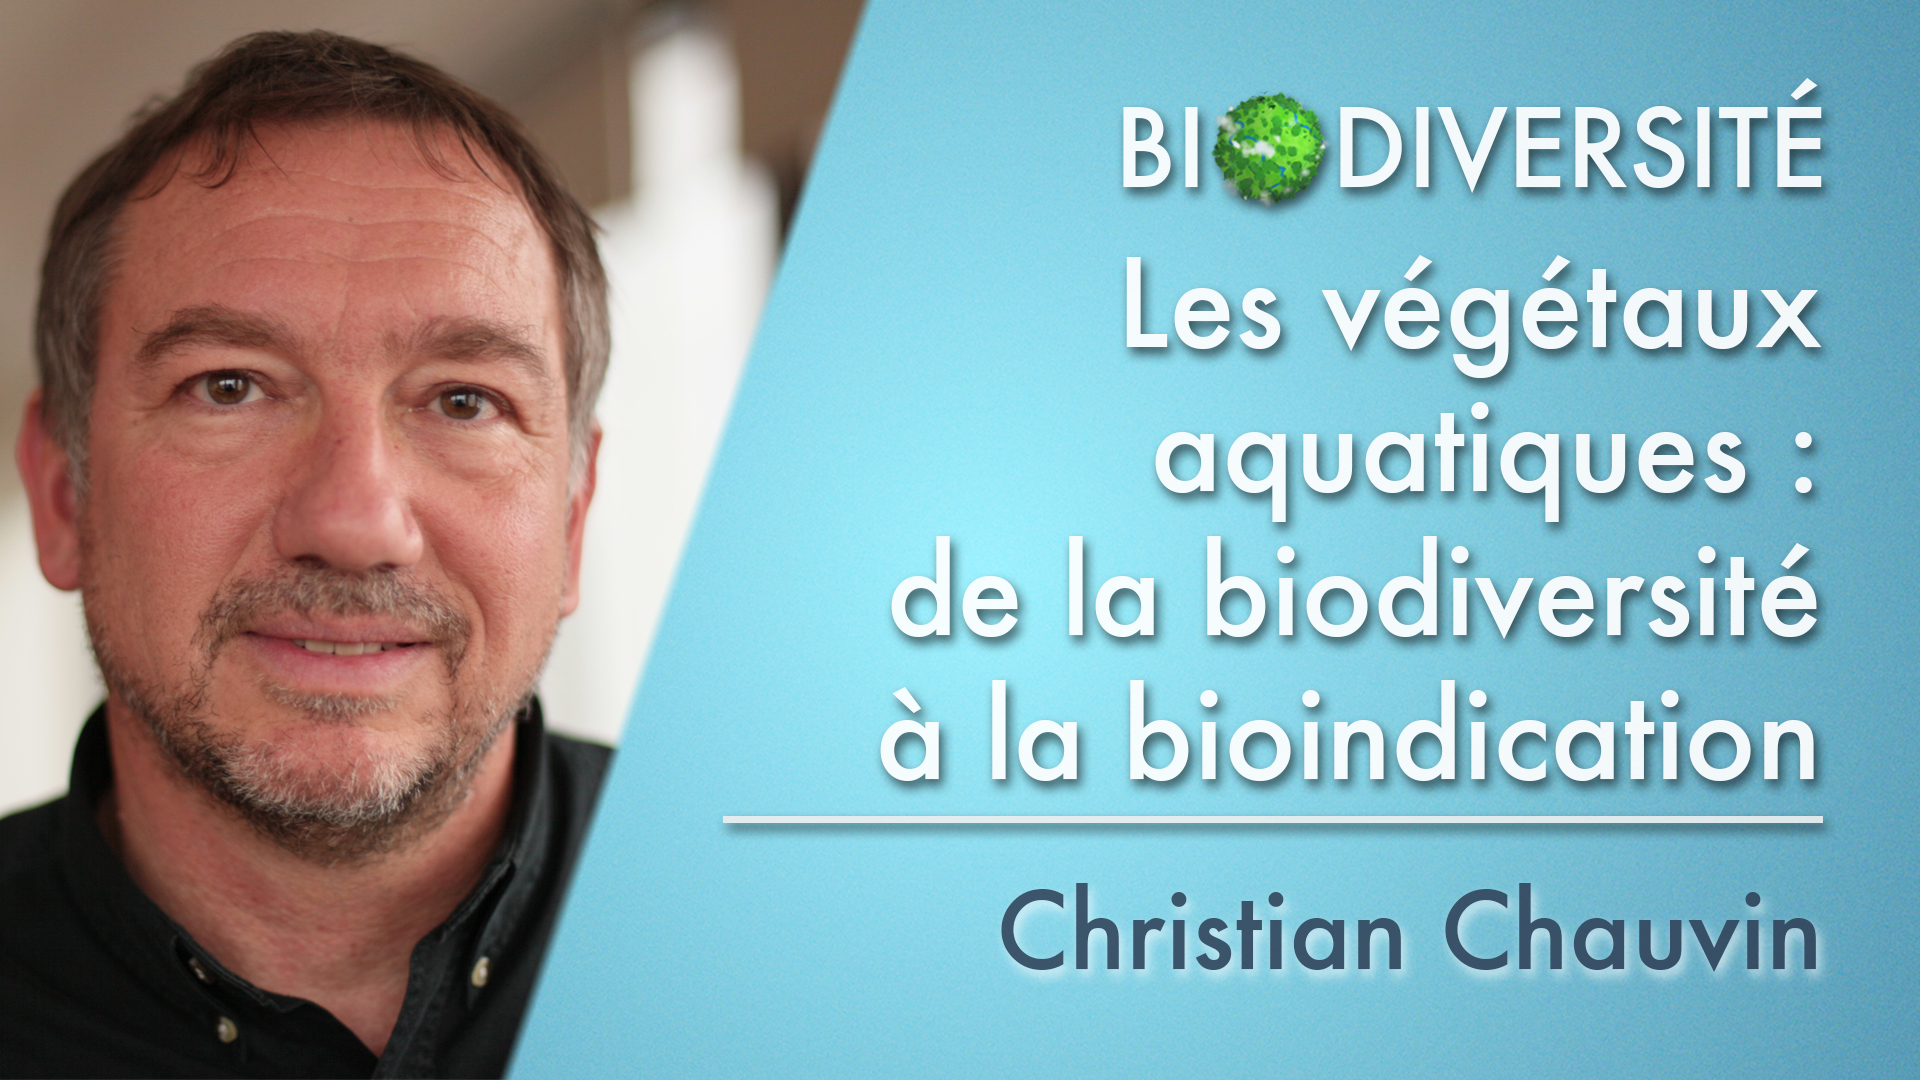 3. Les végétaux aquatiques : de la biodiversité à la bioindication